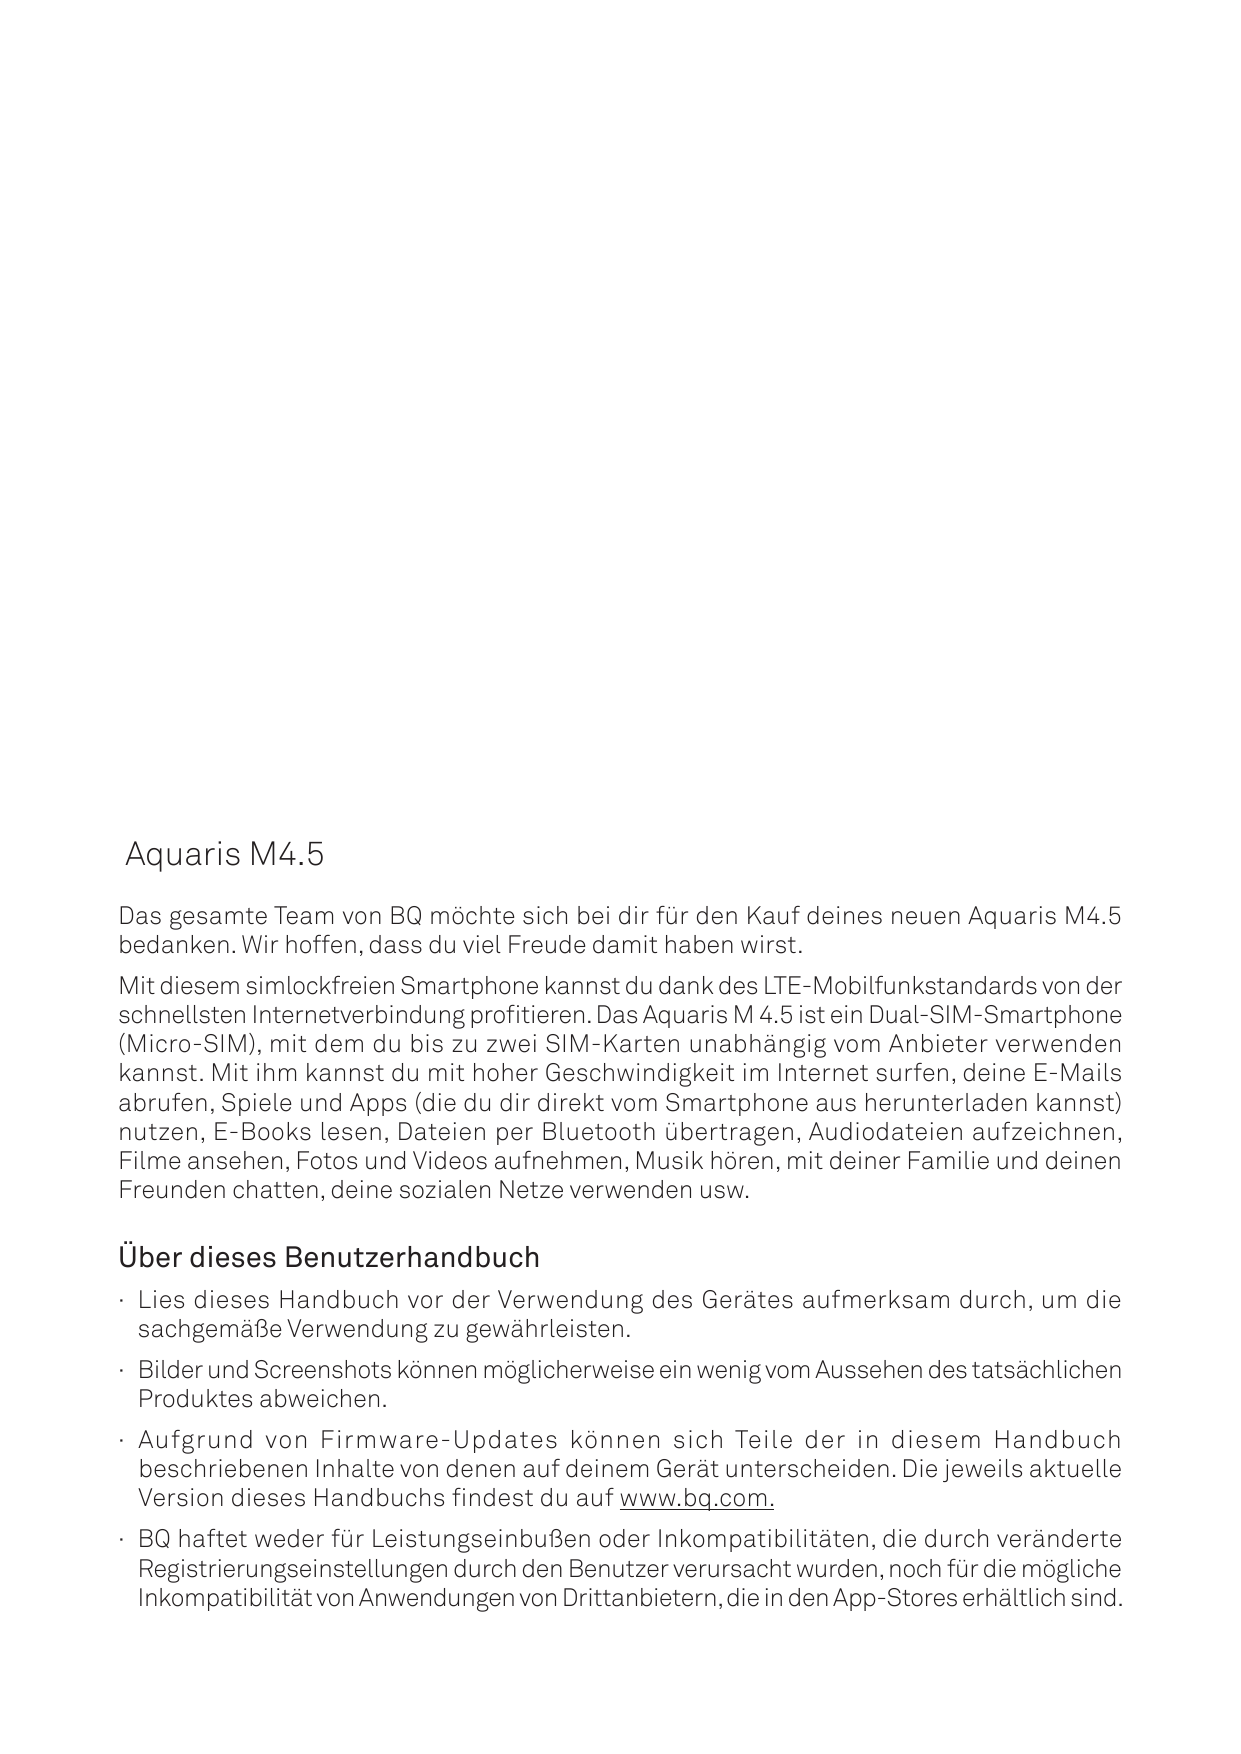 Aquaris M4.5Das gesamte Team von BQ möchte sich bei dir für den Kauf deines neuen Aquaris M4.5bedanken. Wir hoffen, dass du viel